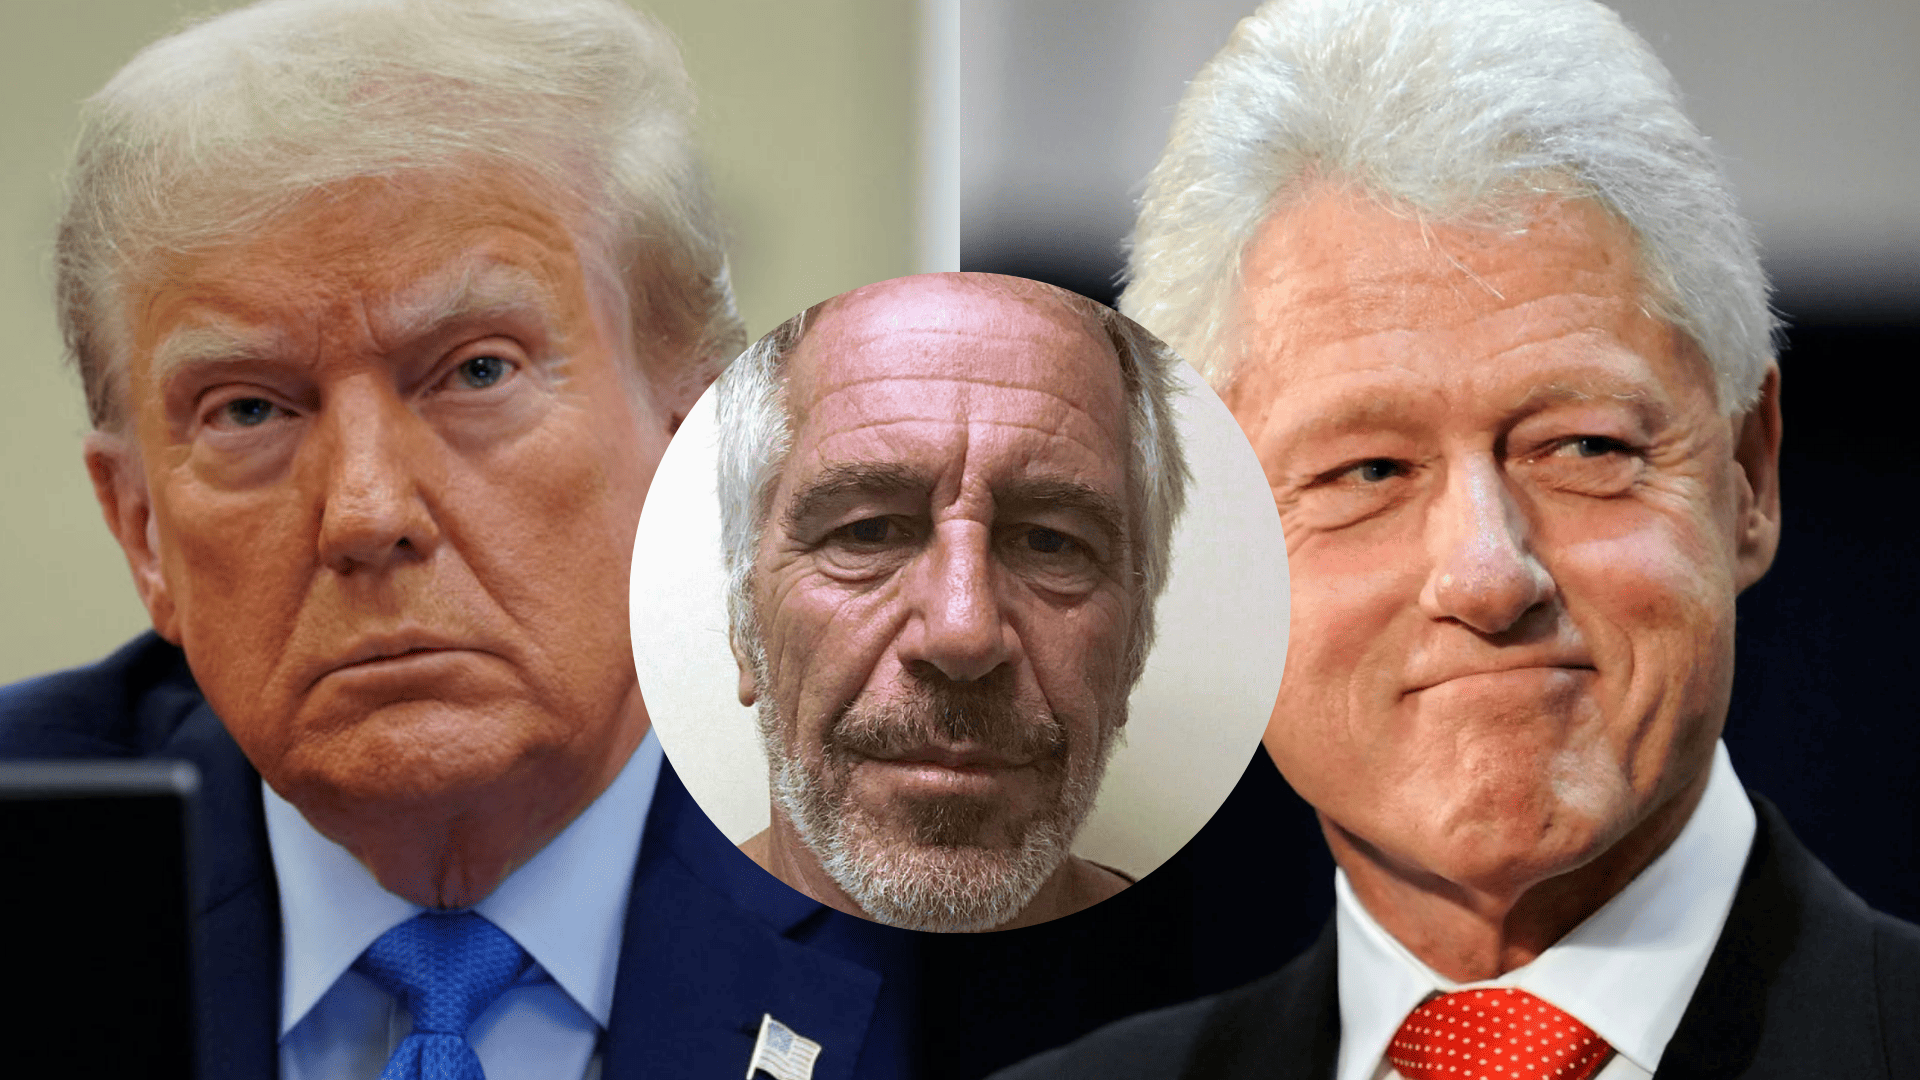 En la imagen sale Jeffrey Epstein, multimillonario condenado por pedofilia y trafico sexual, y los dos expresidentes y posibles clientes de Epstein, Donald Trump y Bill Clinton.